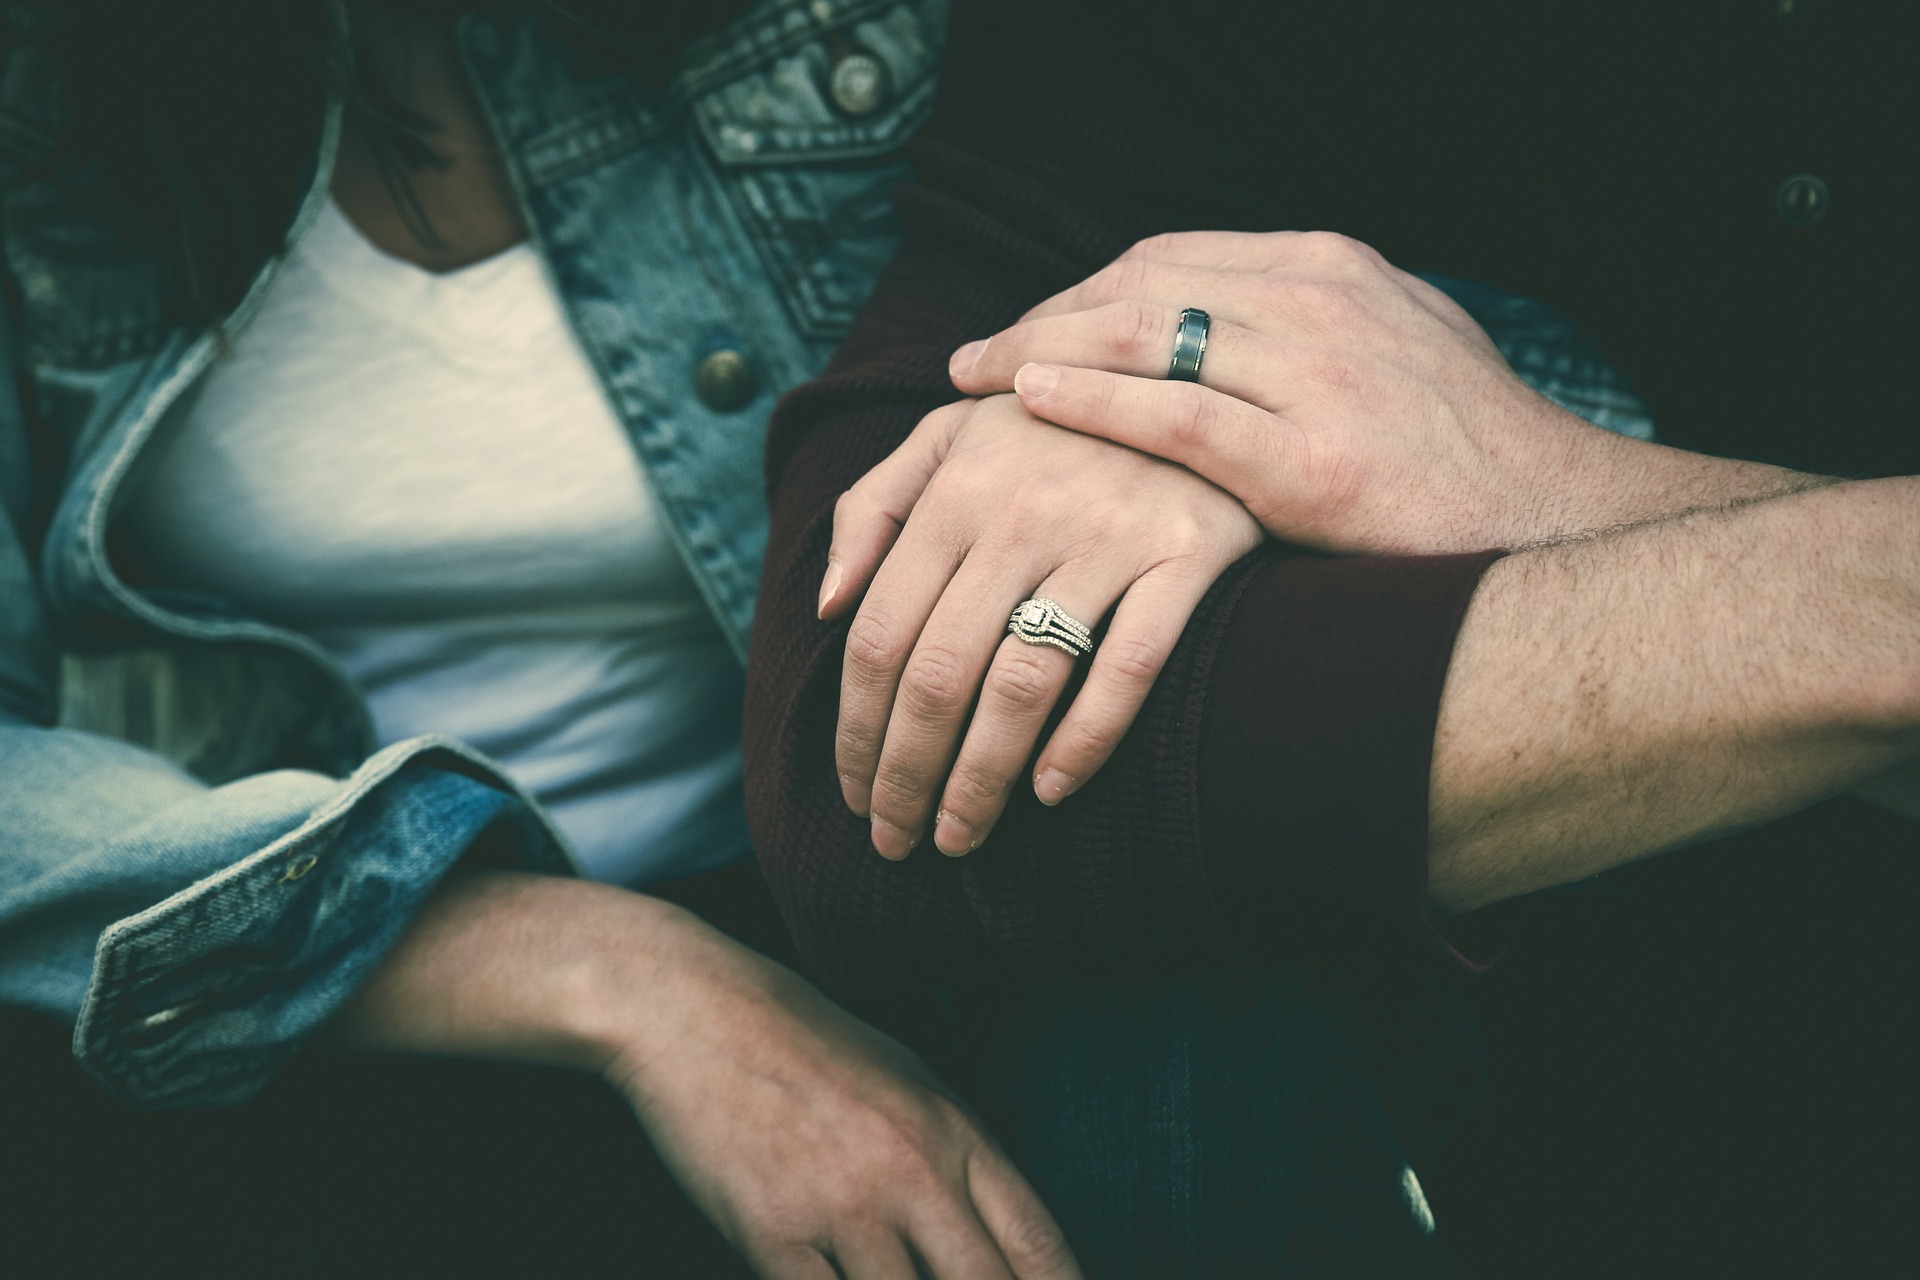 Acest "test" simplu poate ajuta la identificarea partenerilor potențial toxici încă de la începutul unei relații